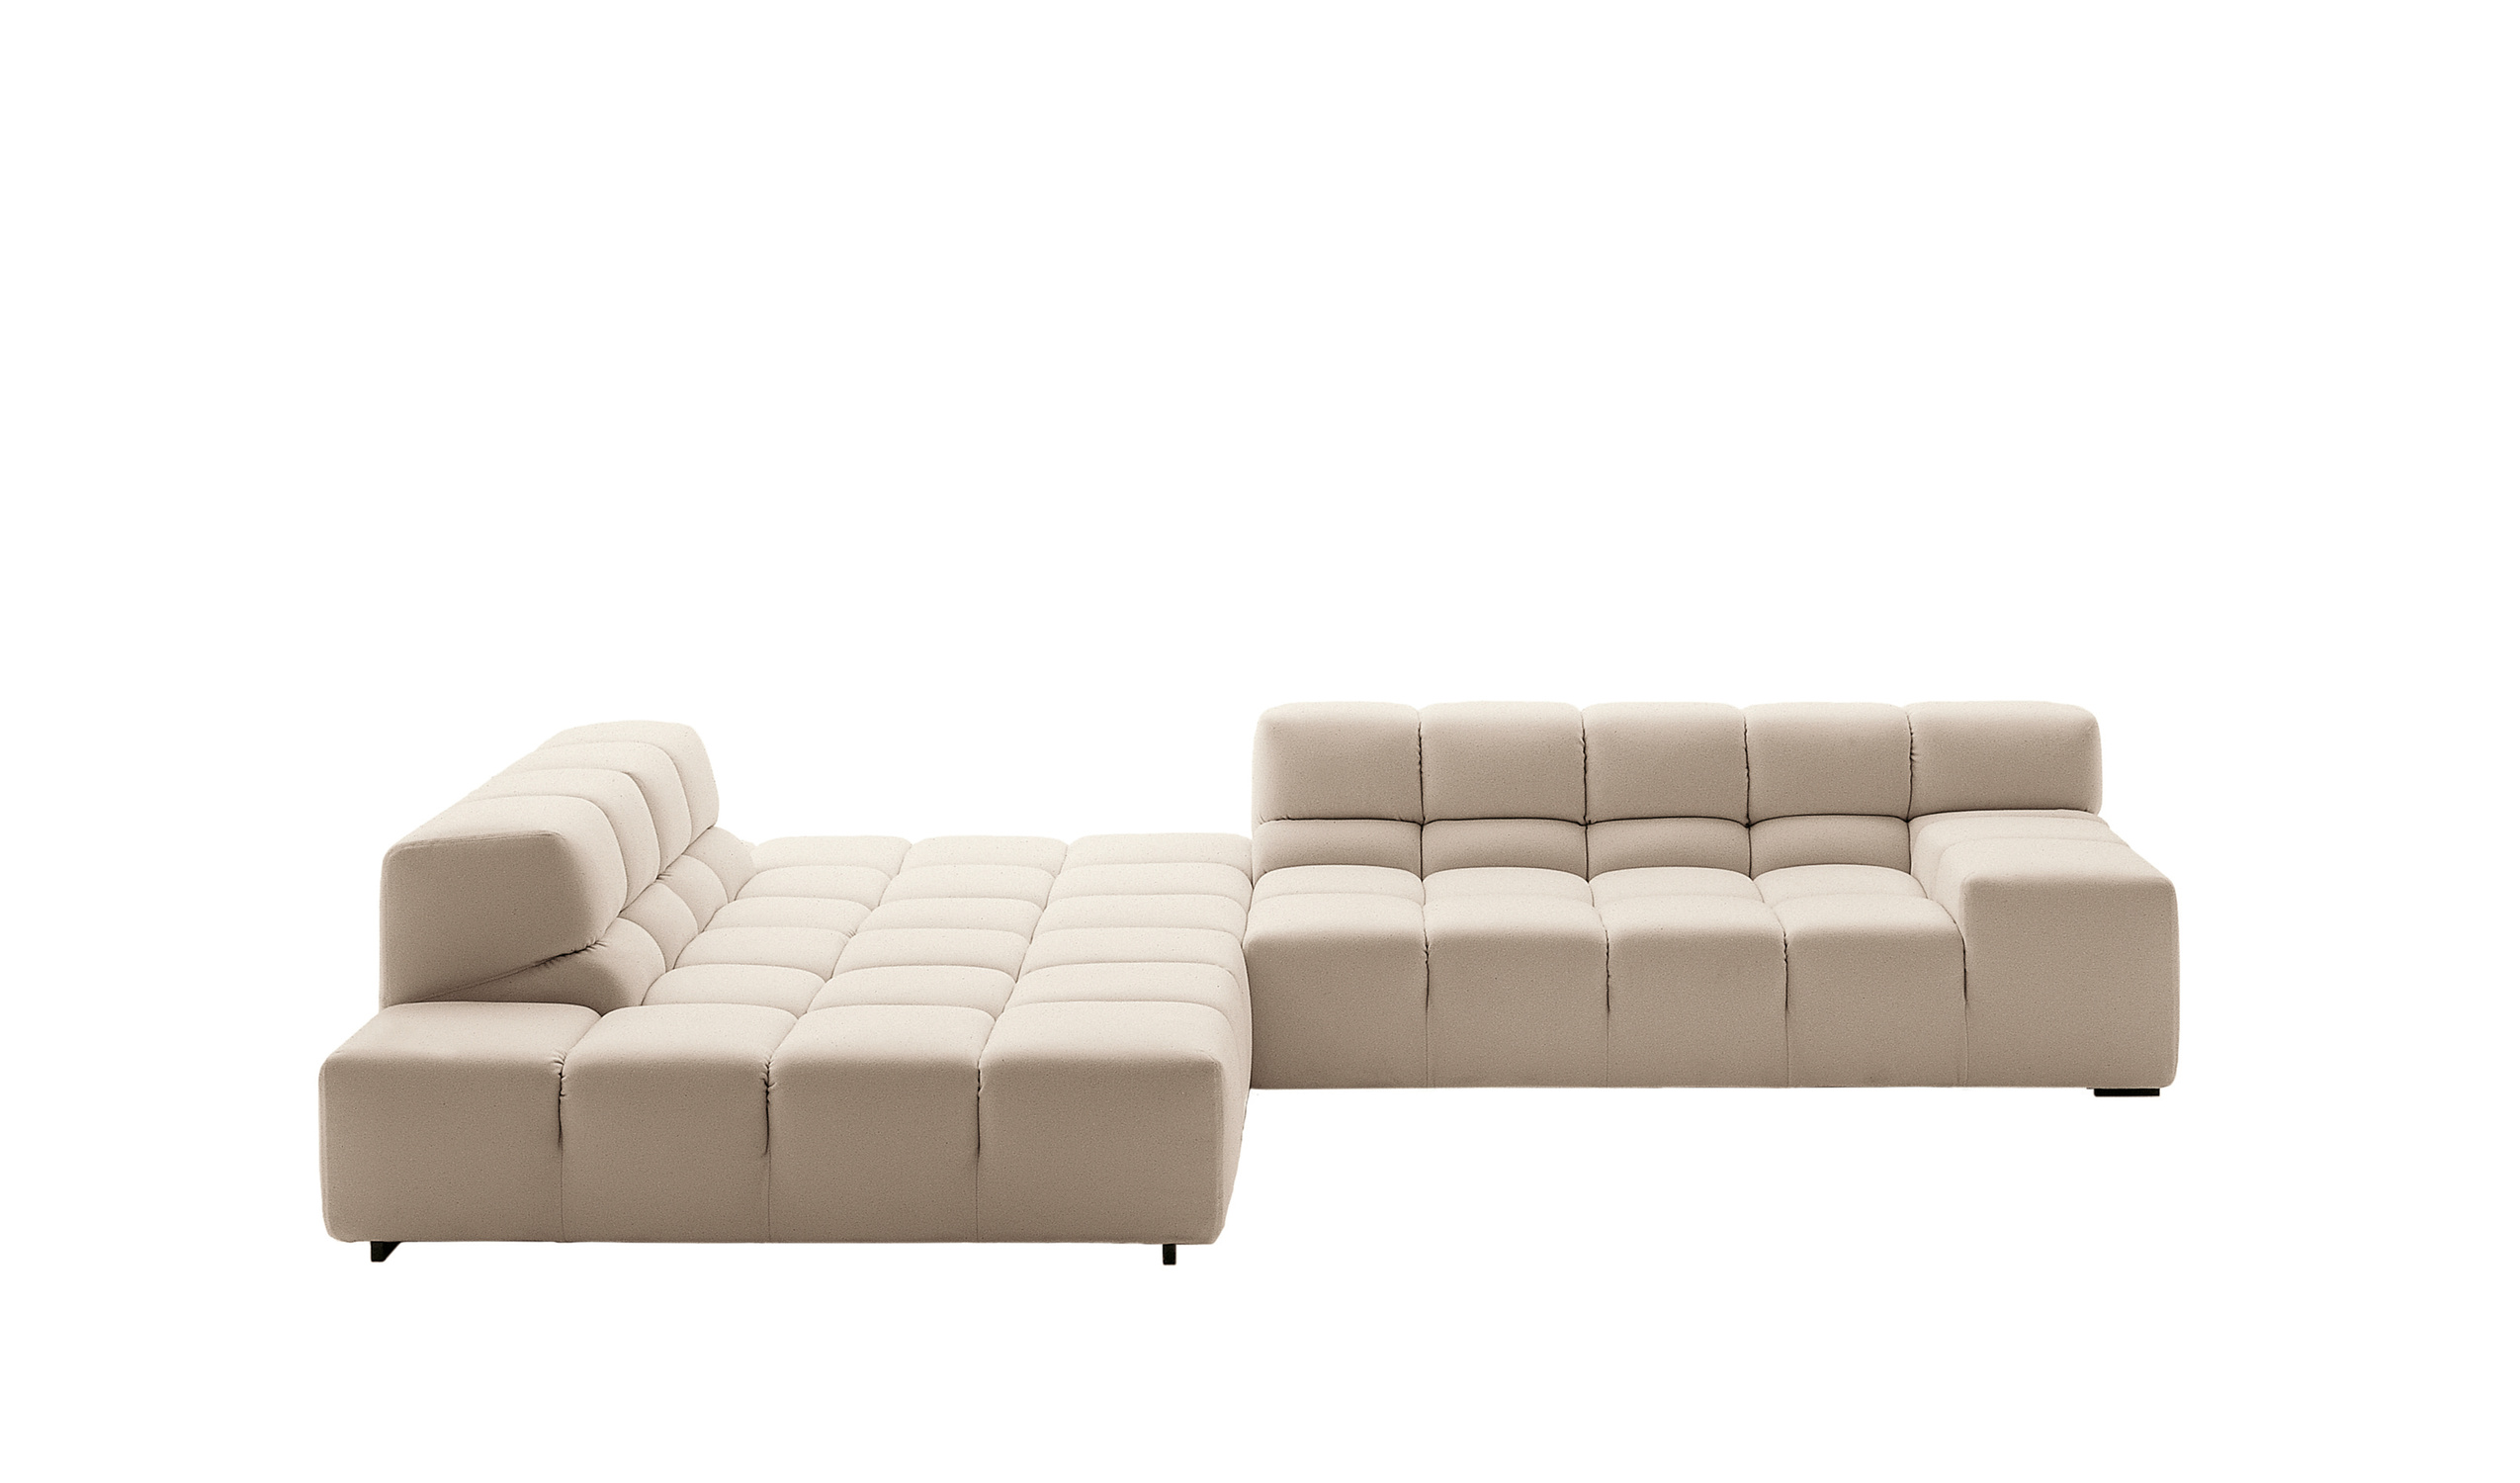 Modern designer italian sofas - Tufty-Time Sofas 5